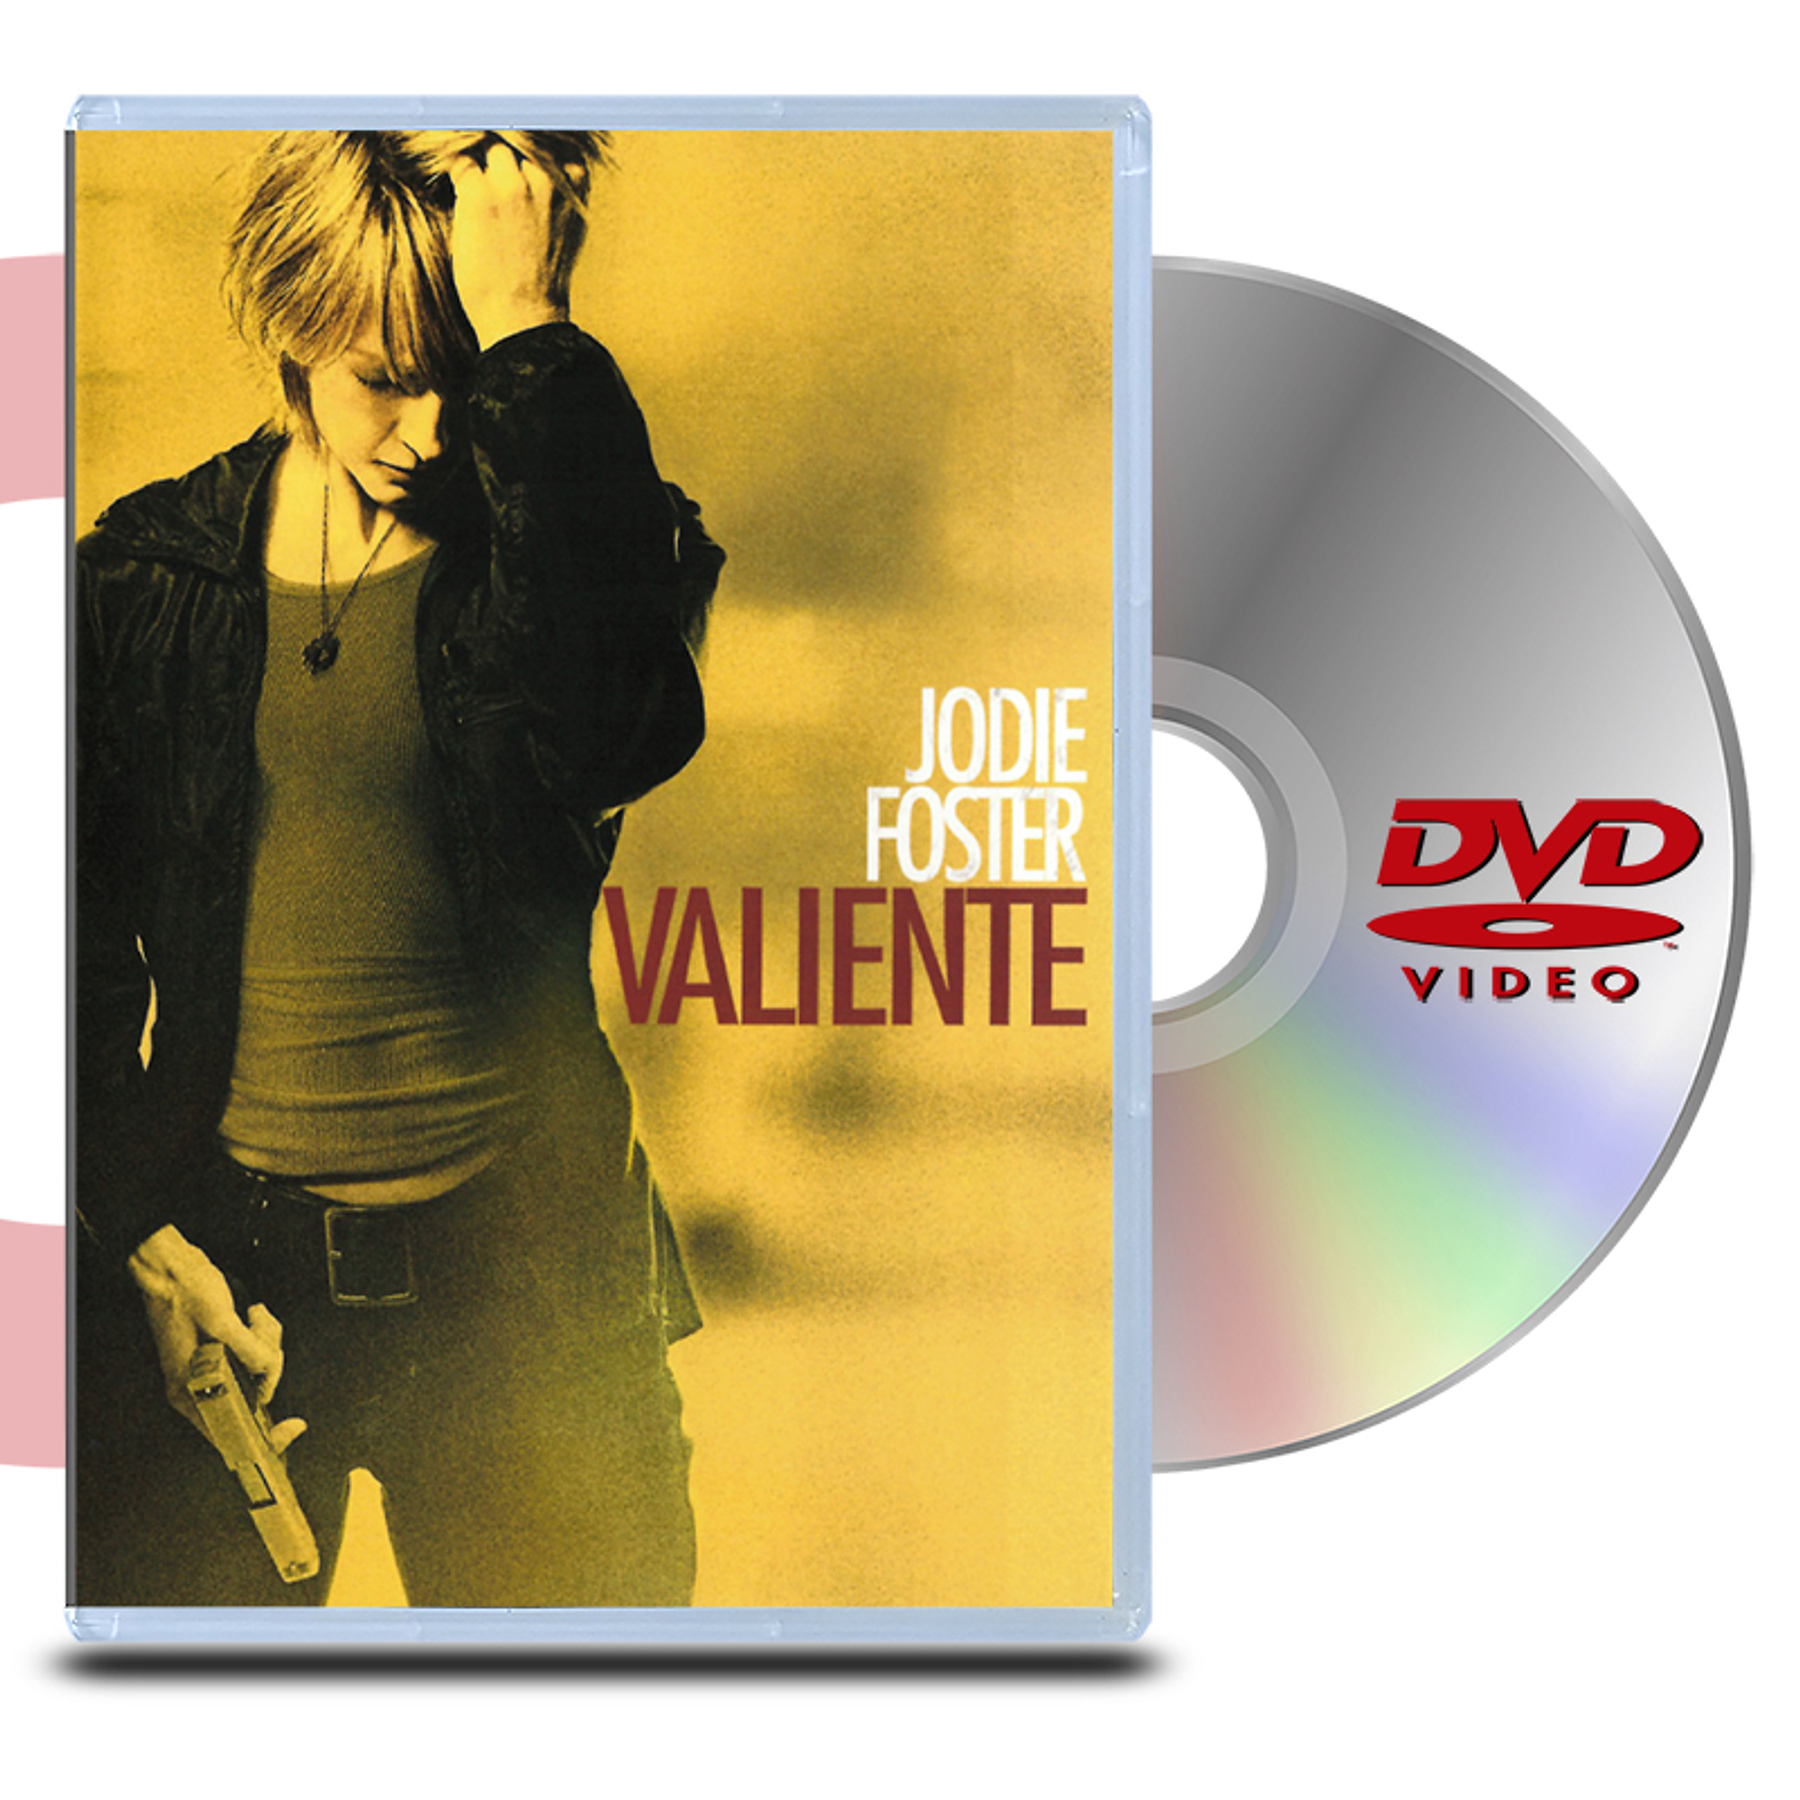 DVD Valiente